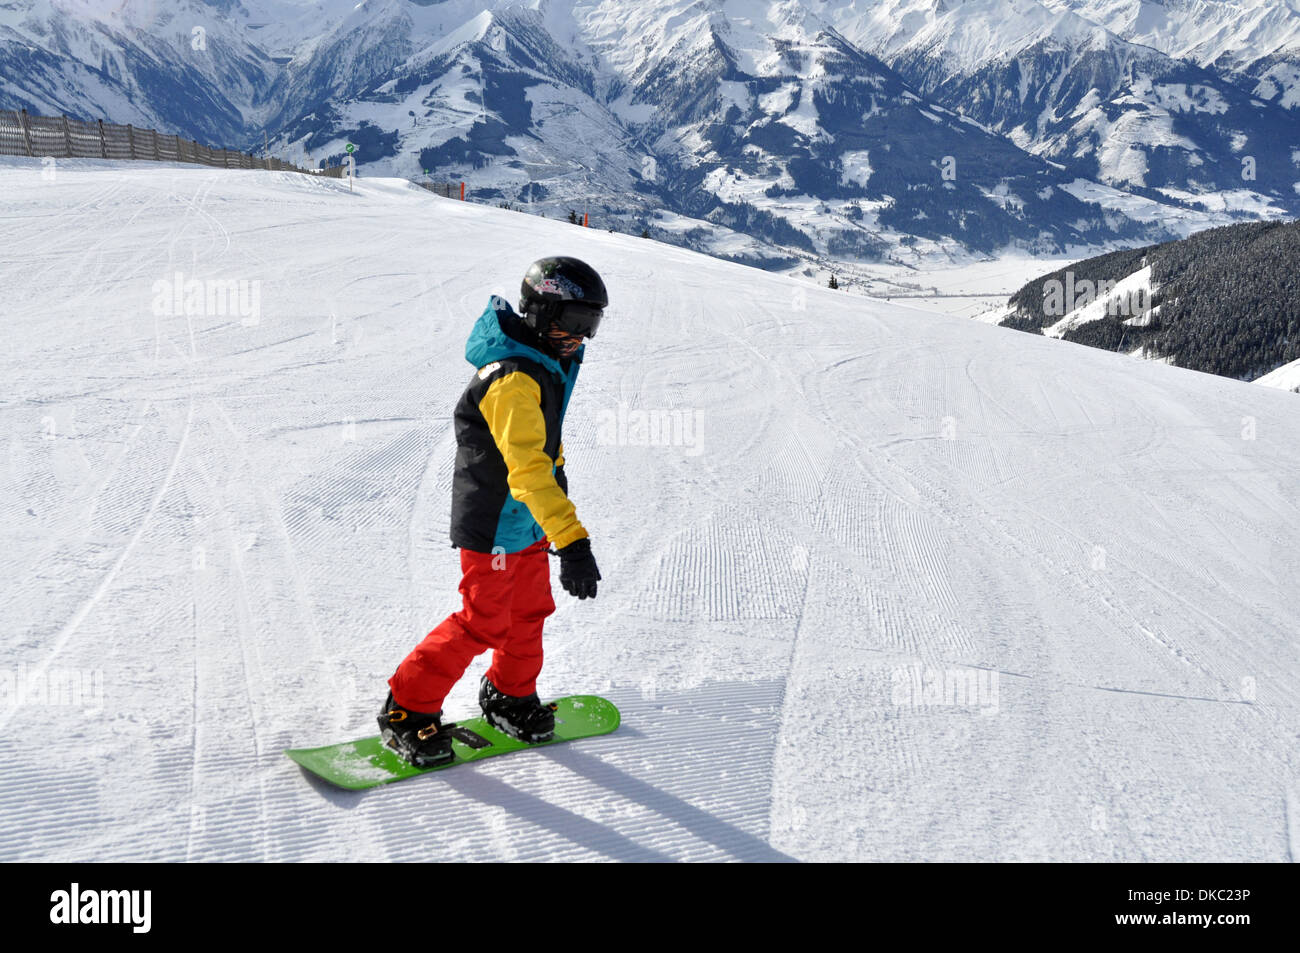 Snowboarding boy in Austrian Ski resort. Model released Stock Photo